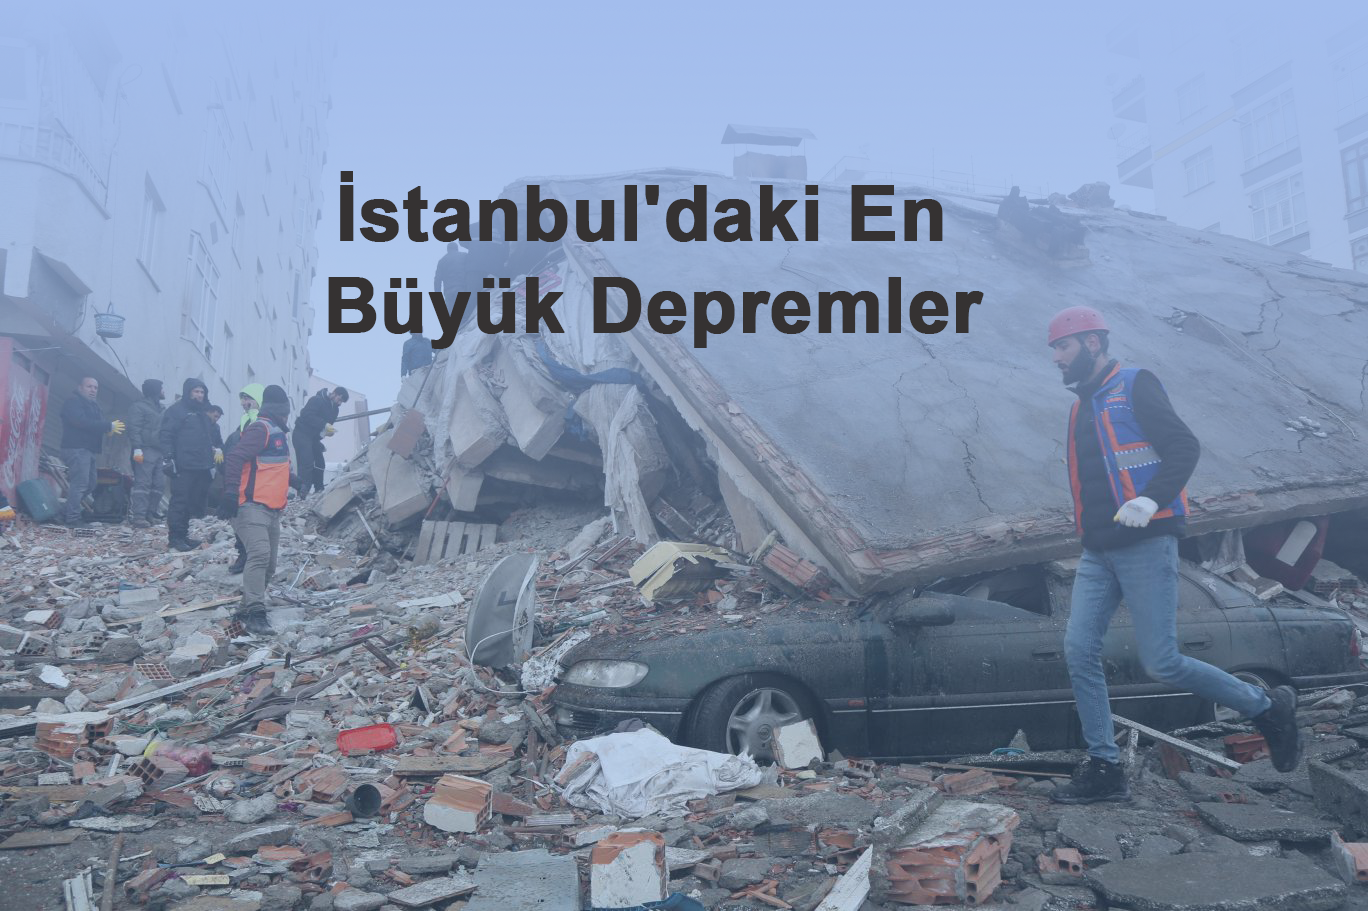 İstanbul'daki En Büyük Depremler